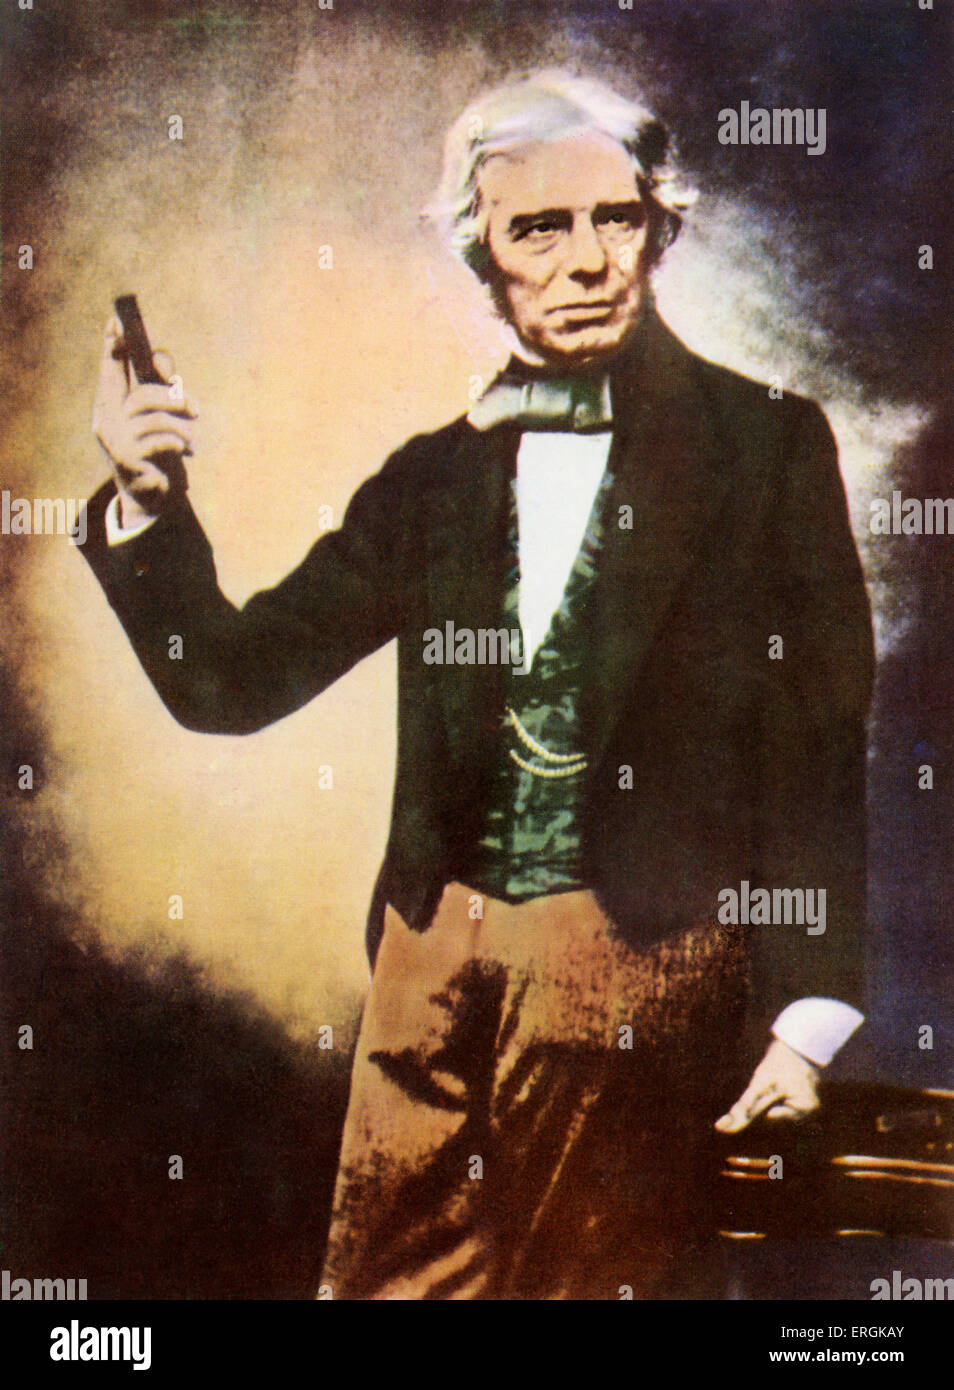 Michael Faraday (1791-1867). Michael Faraday ha sperimentato nel campo dell'elettromagnetismo. La didascalia recita: 'Michael' di Faraday. Foto Stock